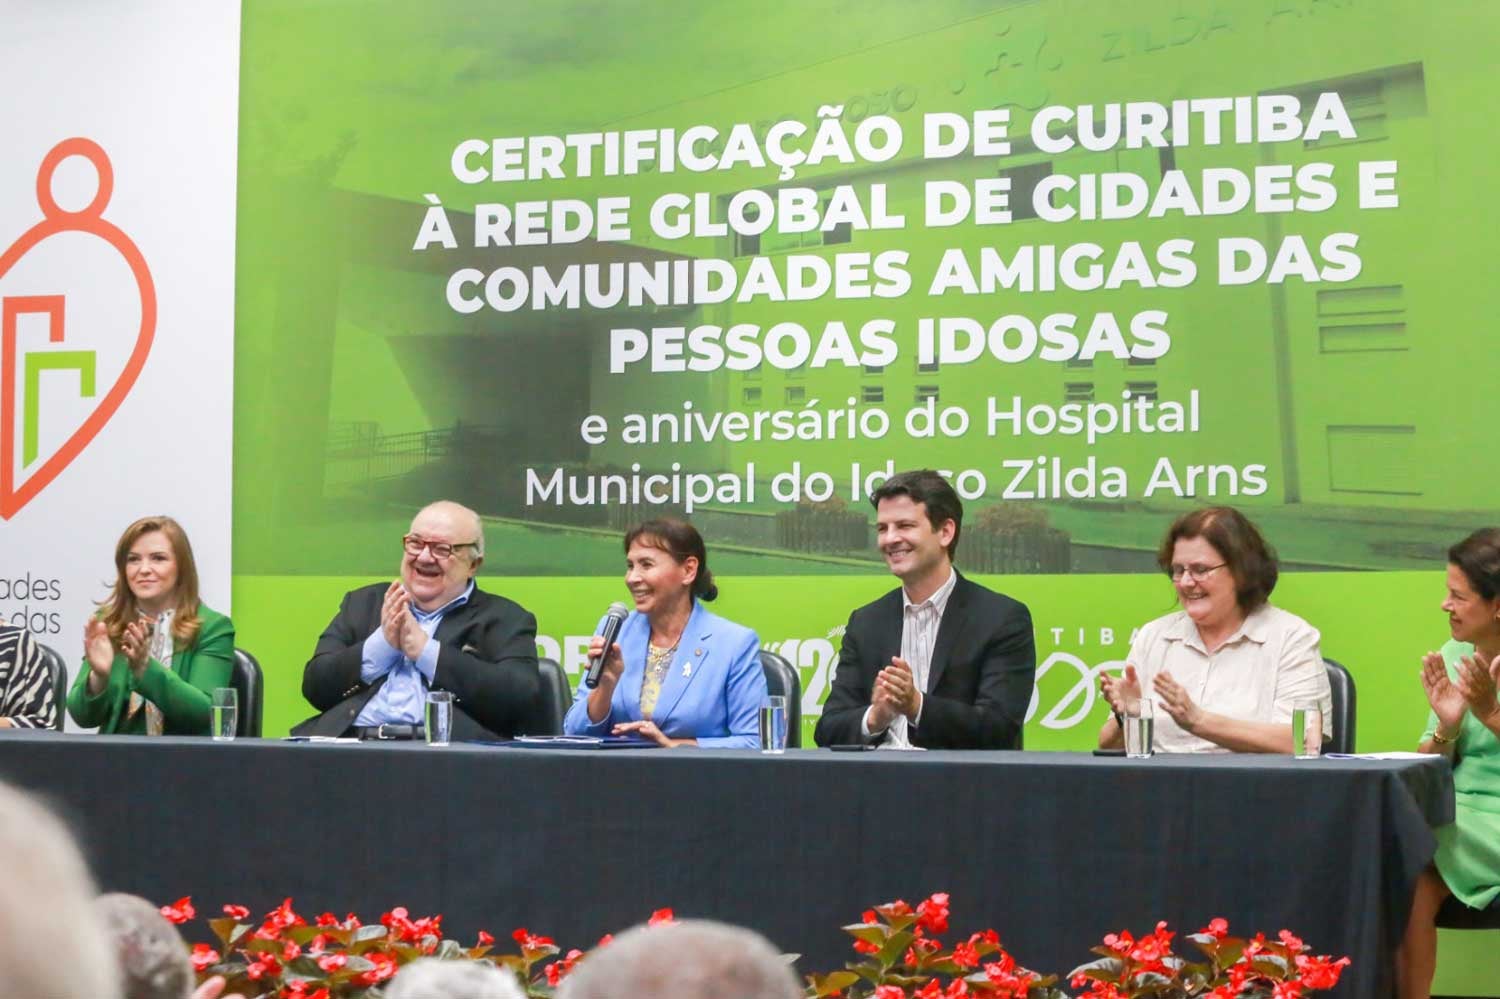 Mesa de autoridades certificação de Curitiba